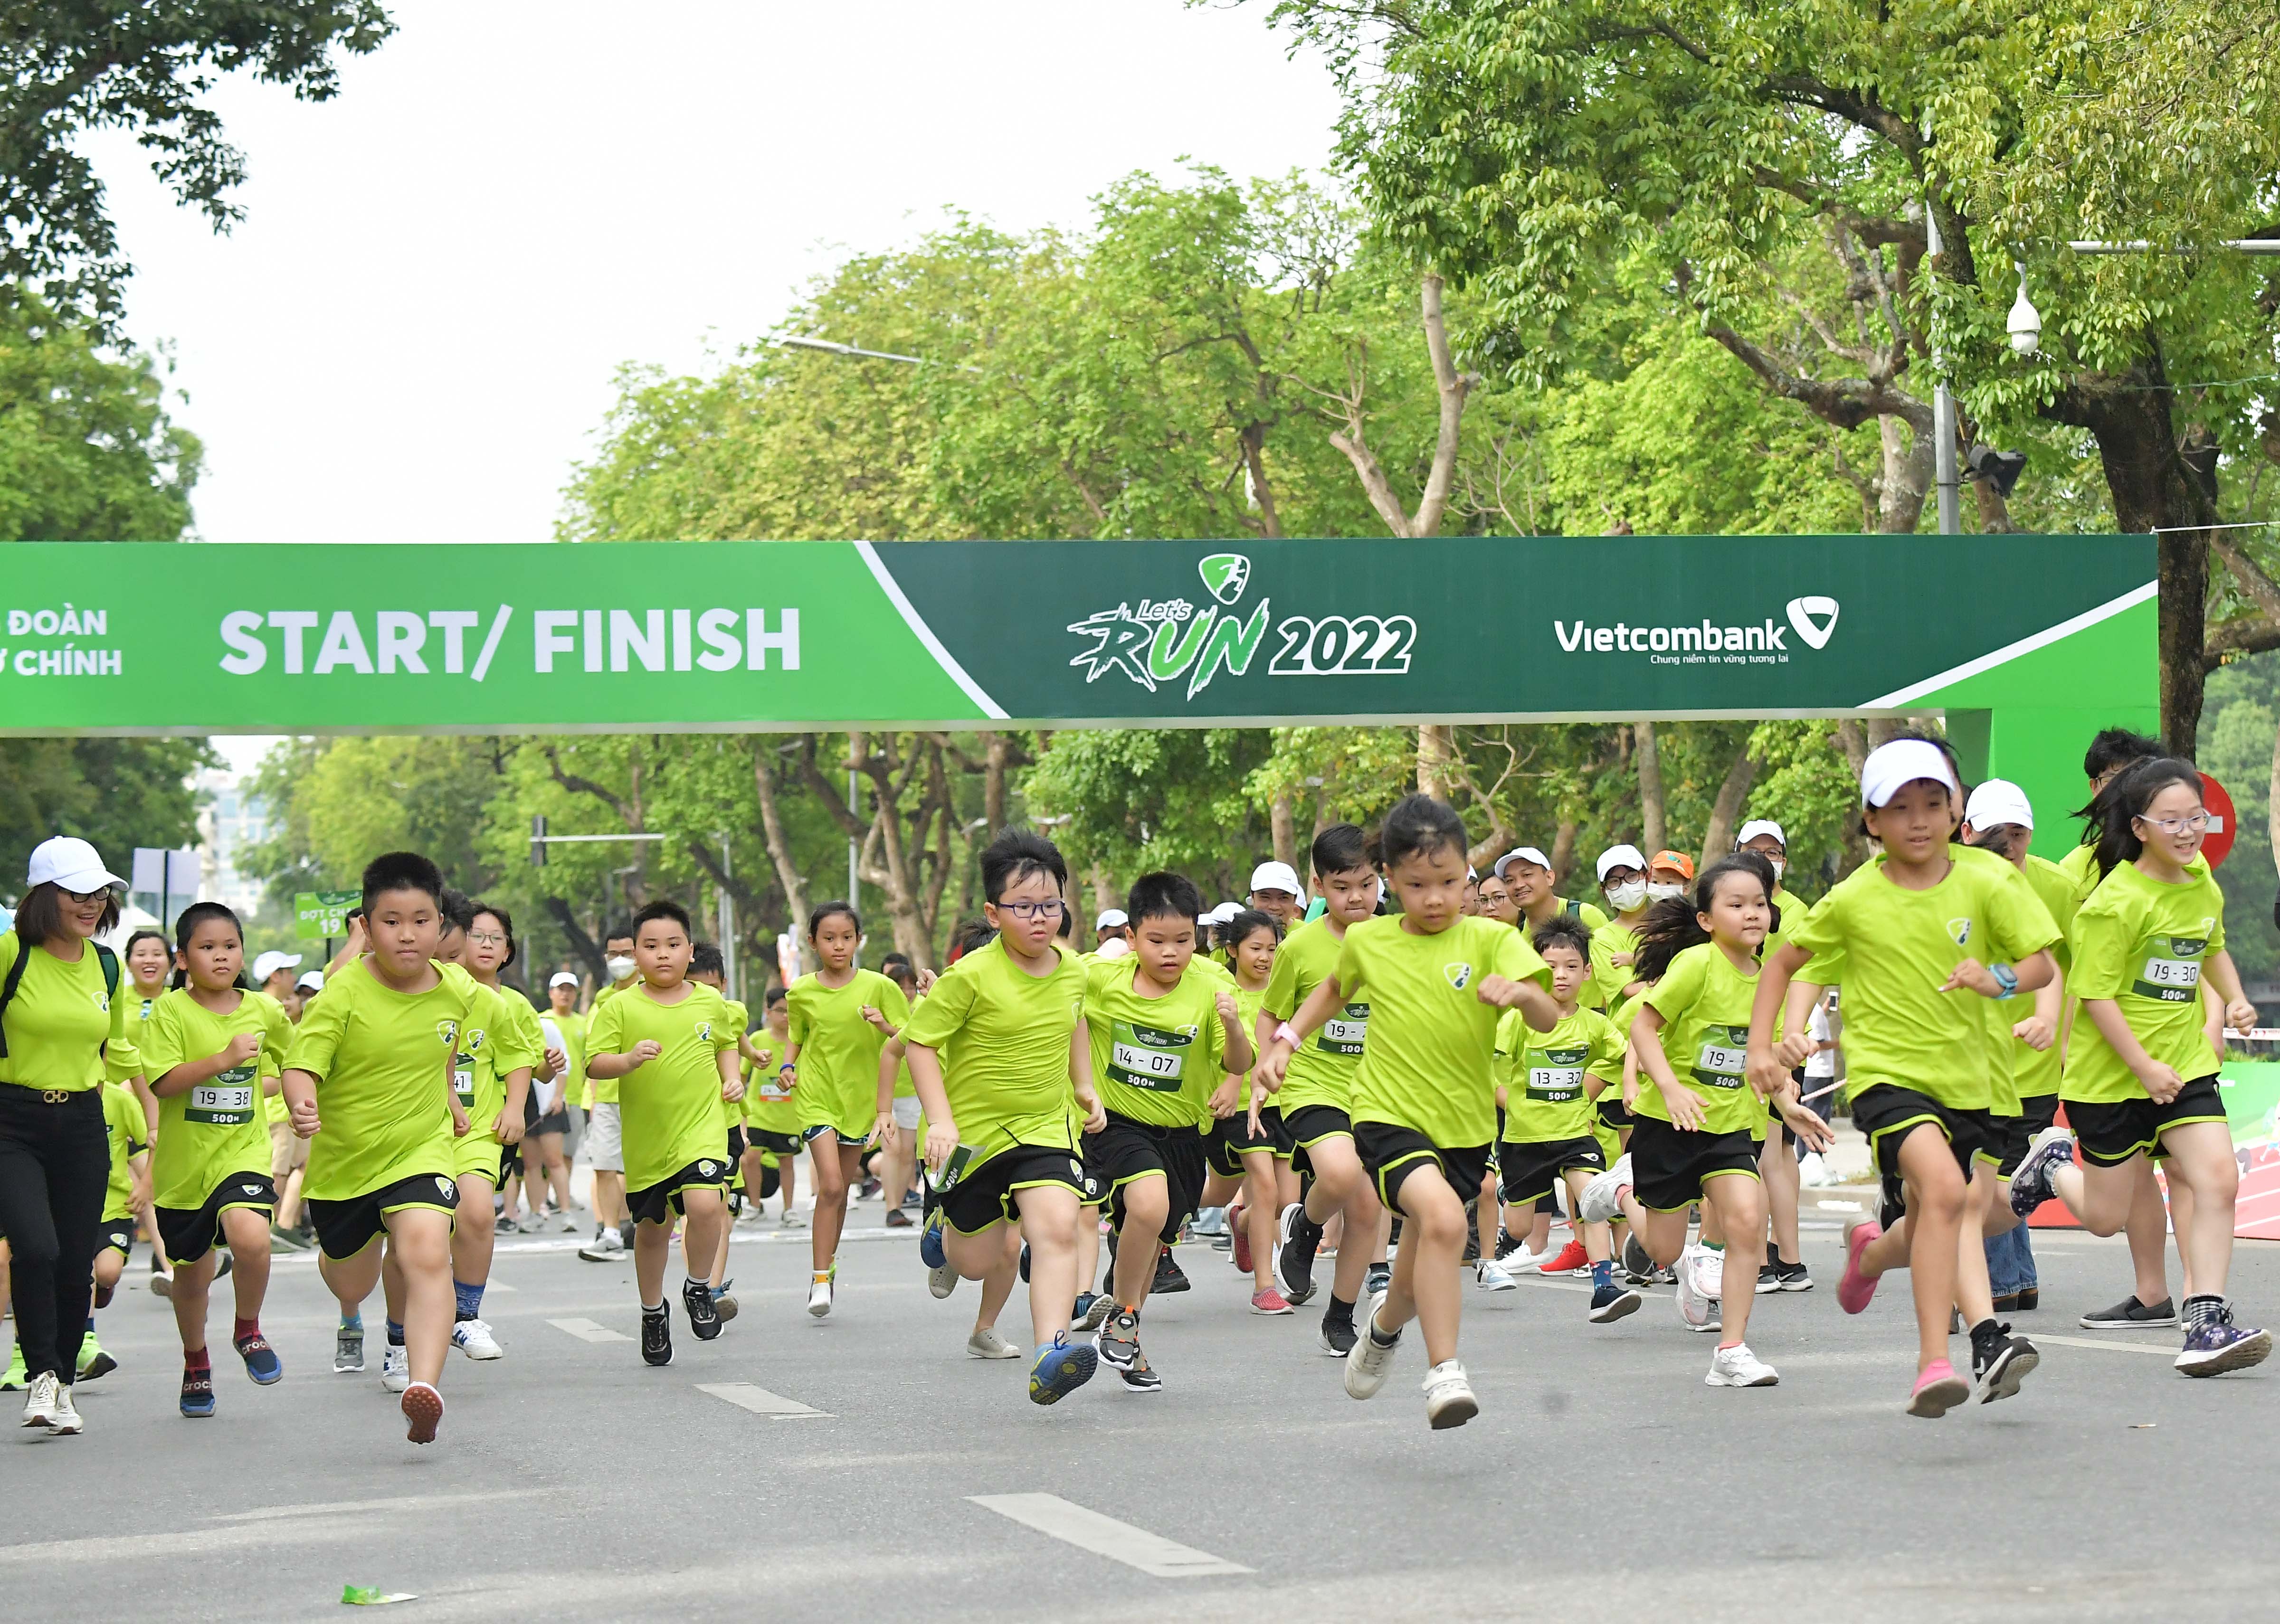 Công đoàn Trụ sở chính Vietcombank tổ chức thành công Giải chạy Let’s Run 2022 